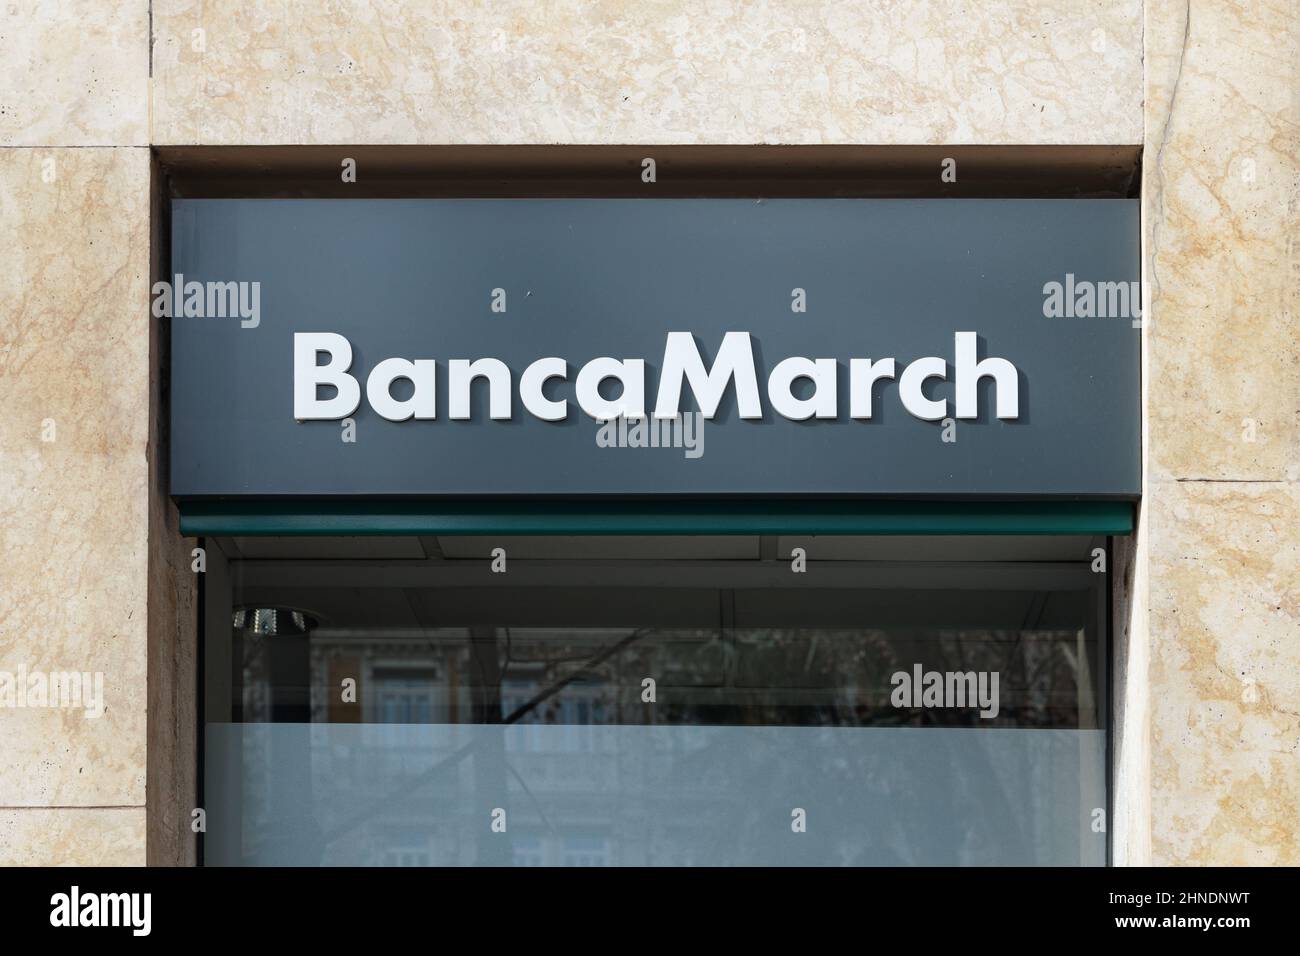 VALENCE, ESPAGNE - 15 FÉVRIER 2022 : Banca March est une banque d'investissement et une société de services financiers espagnoles Banque D'Images